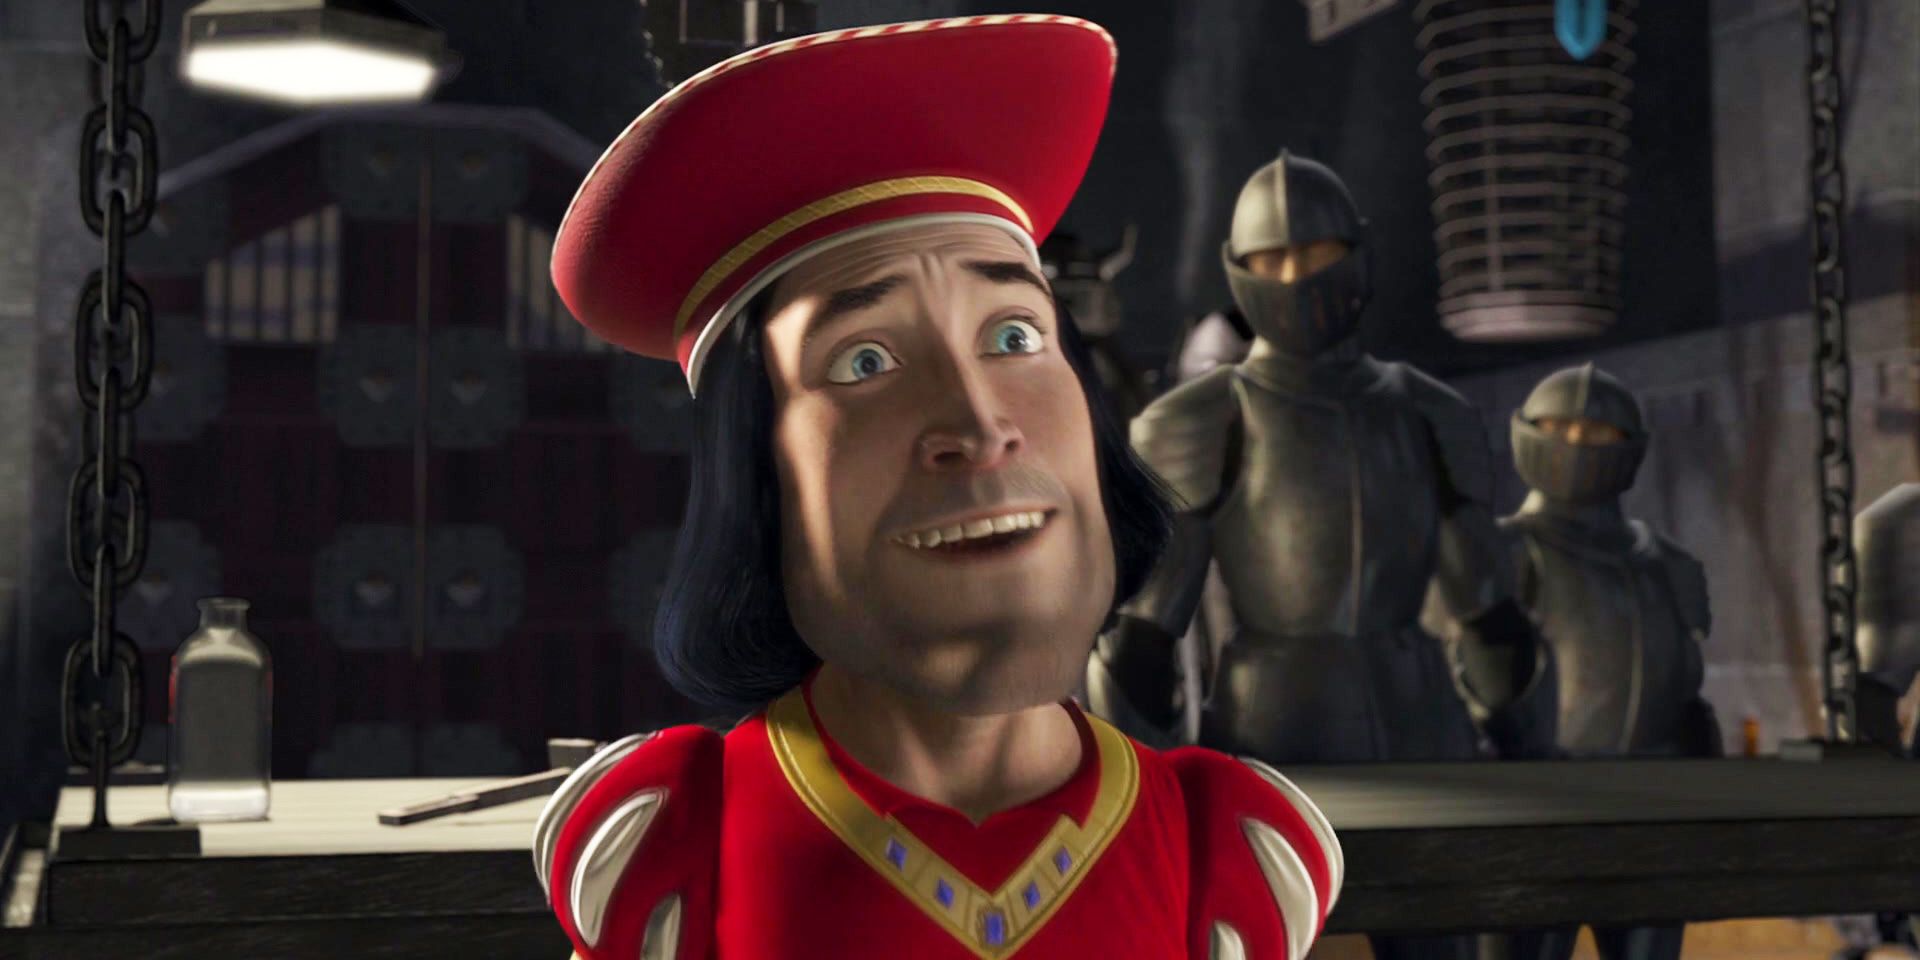 Shrek Lord Farquaad looking happy